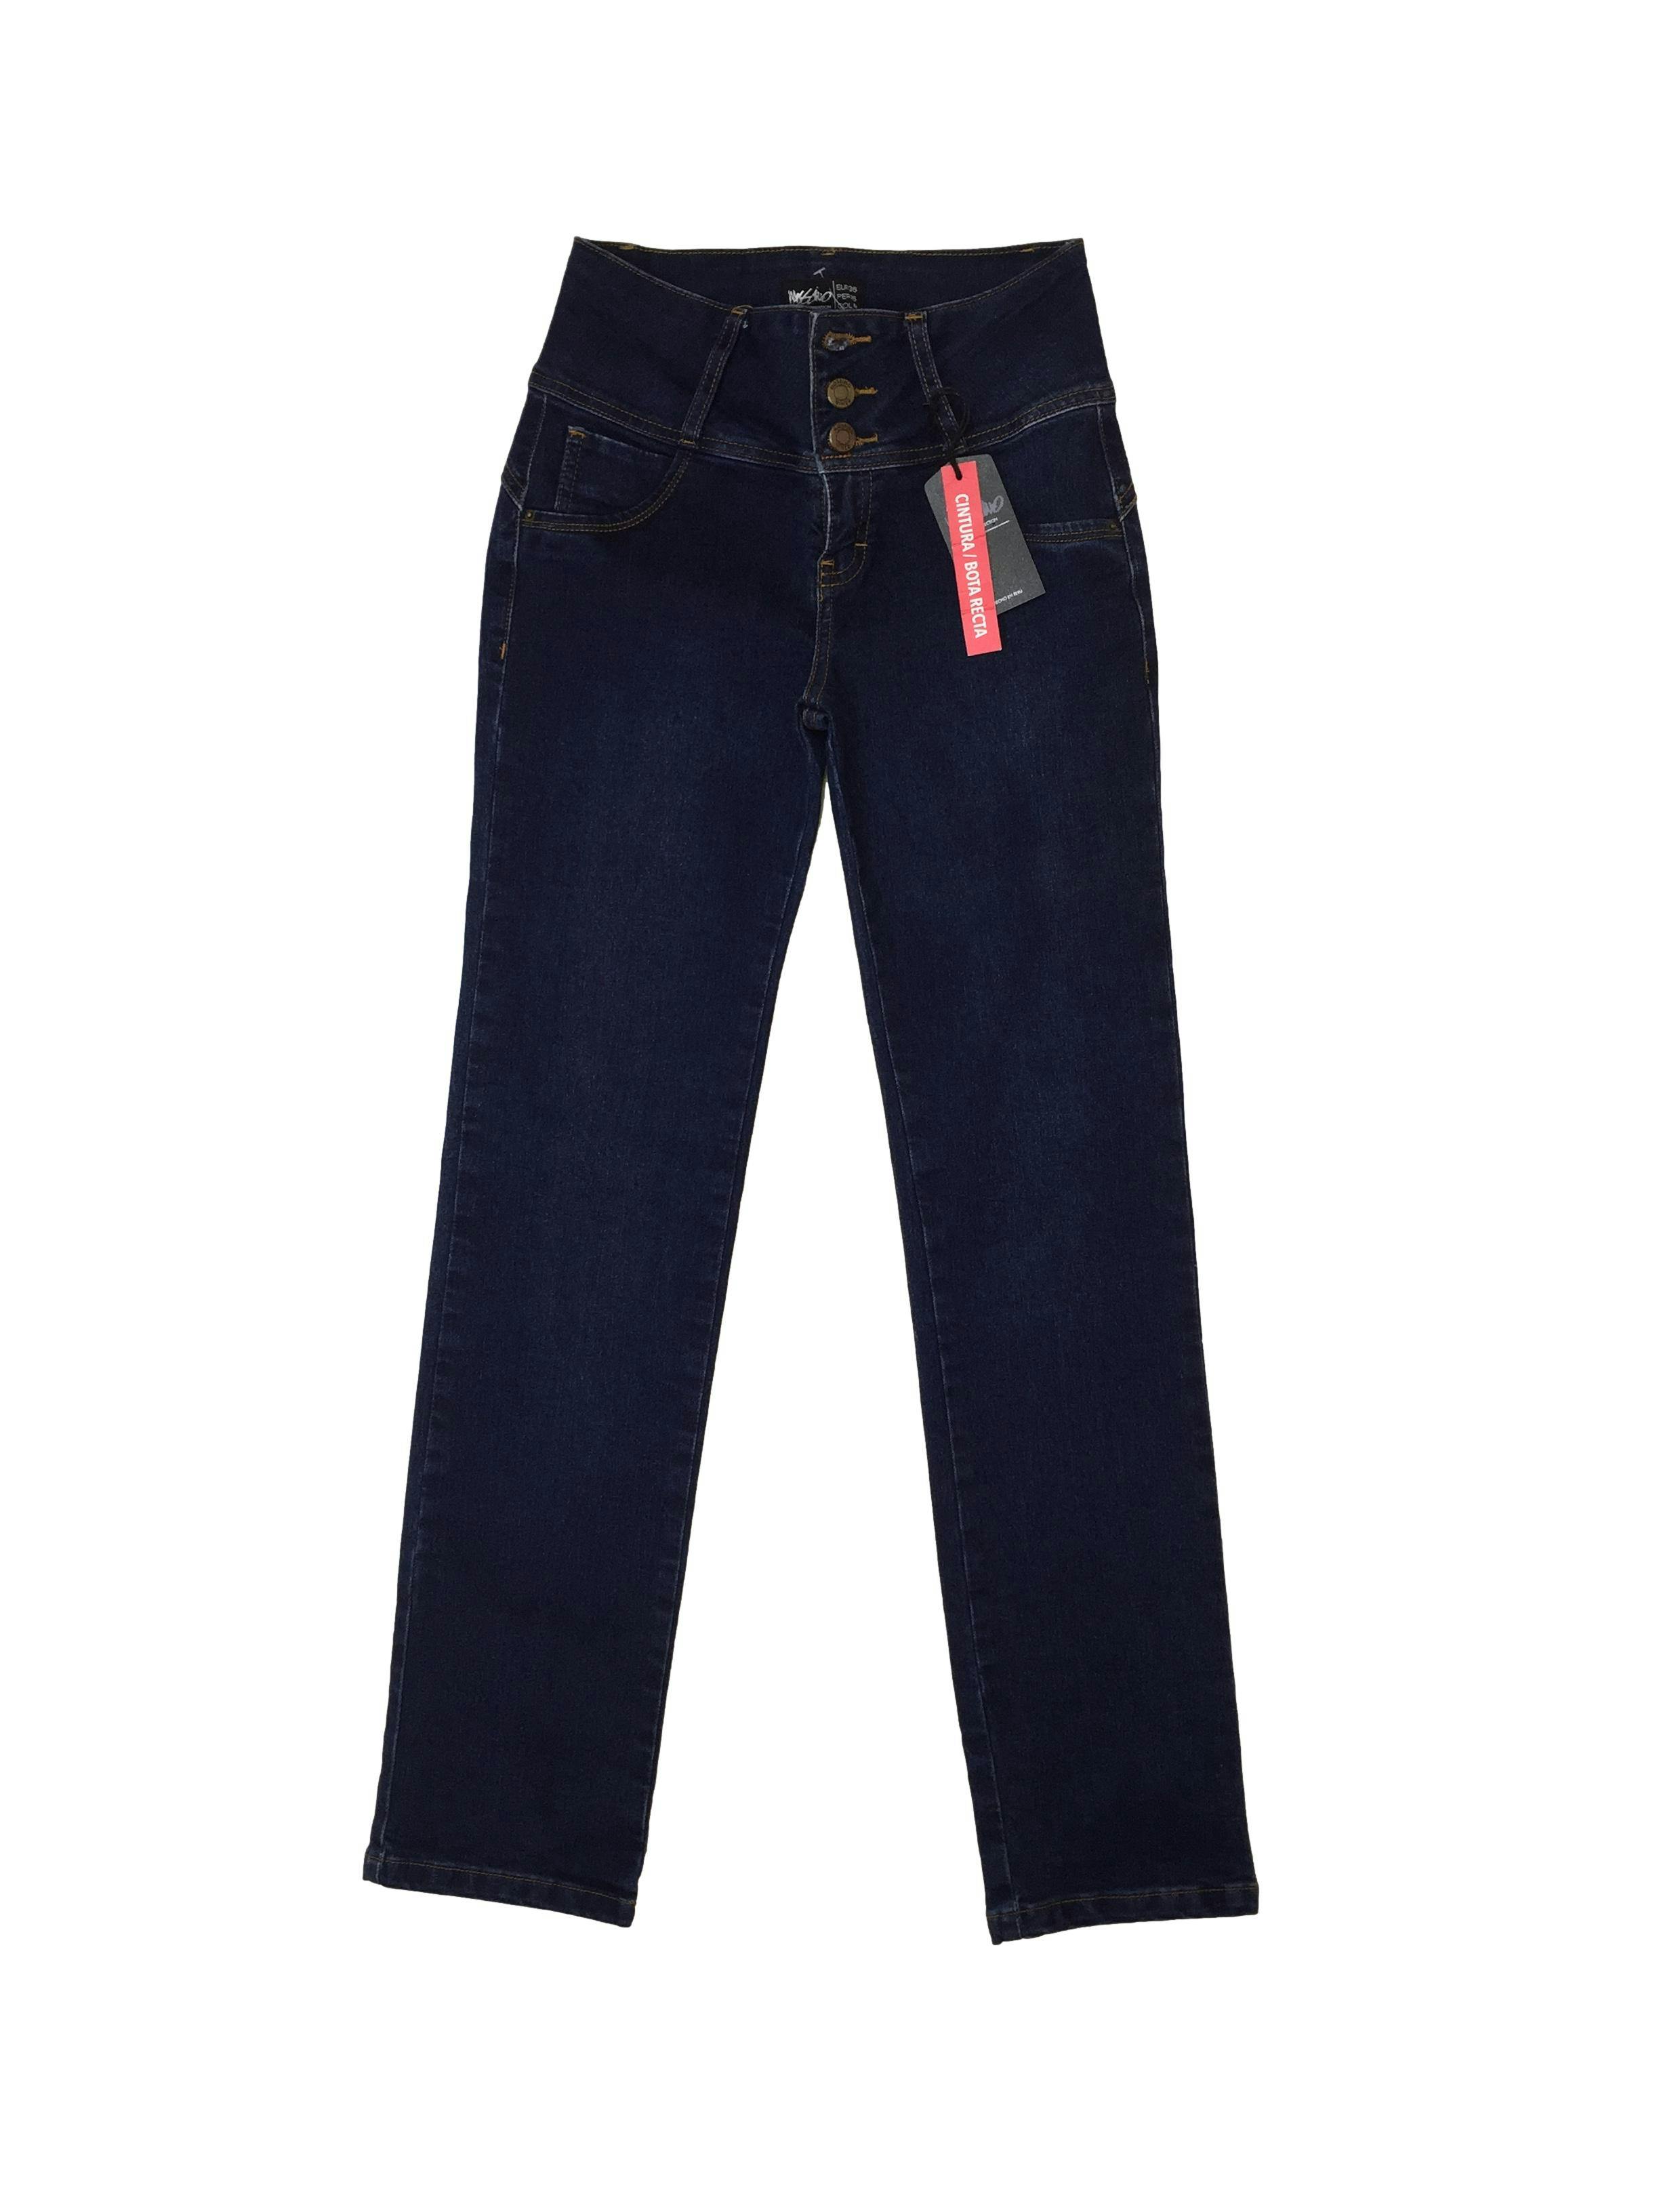 Pantalón Mossimo denim, pretina ancha, tres botones, ligeramente stretch. Cintura: 62 cm, Tiro: 23 cm, Largo: 100 cm. Nuevo con etiqueta